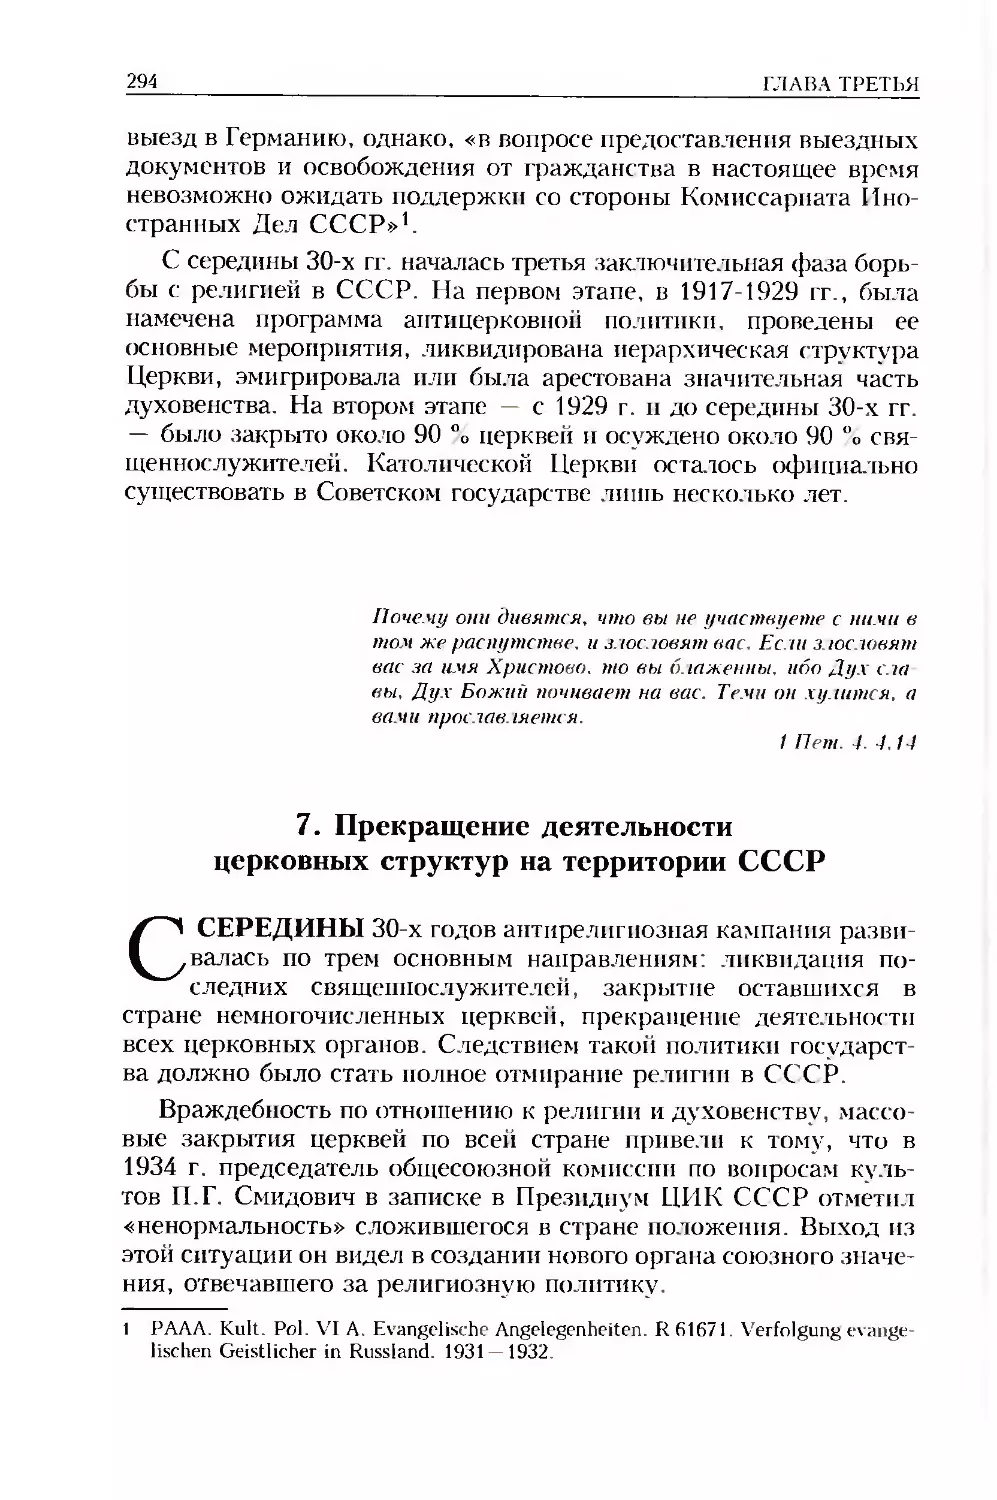 7. Прекращение деятельности церковных структур на территории СССР